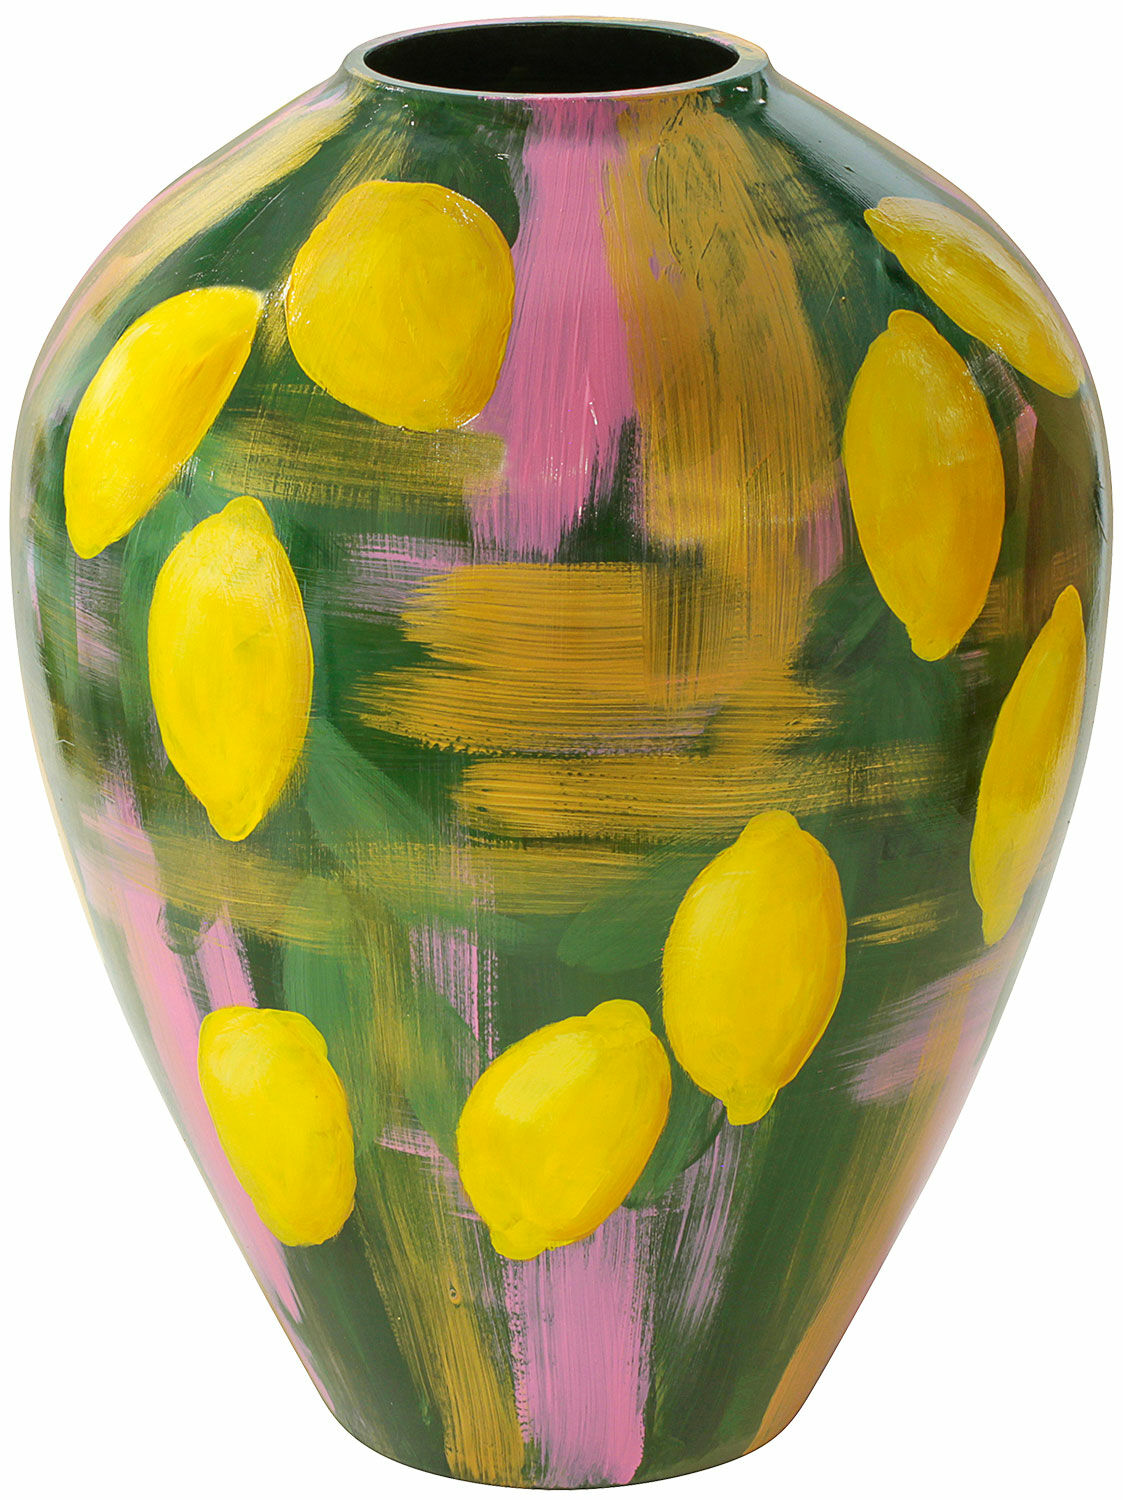 Glass vase "Lemon Garden" by Milou van Schaik Martinet